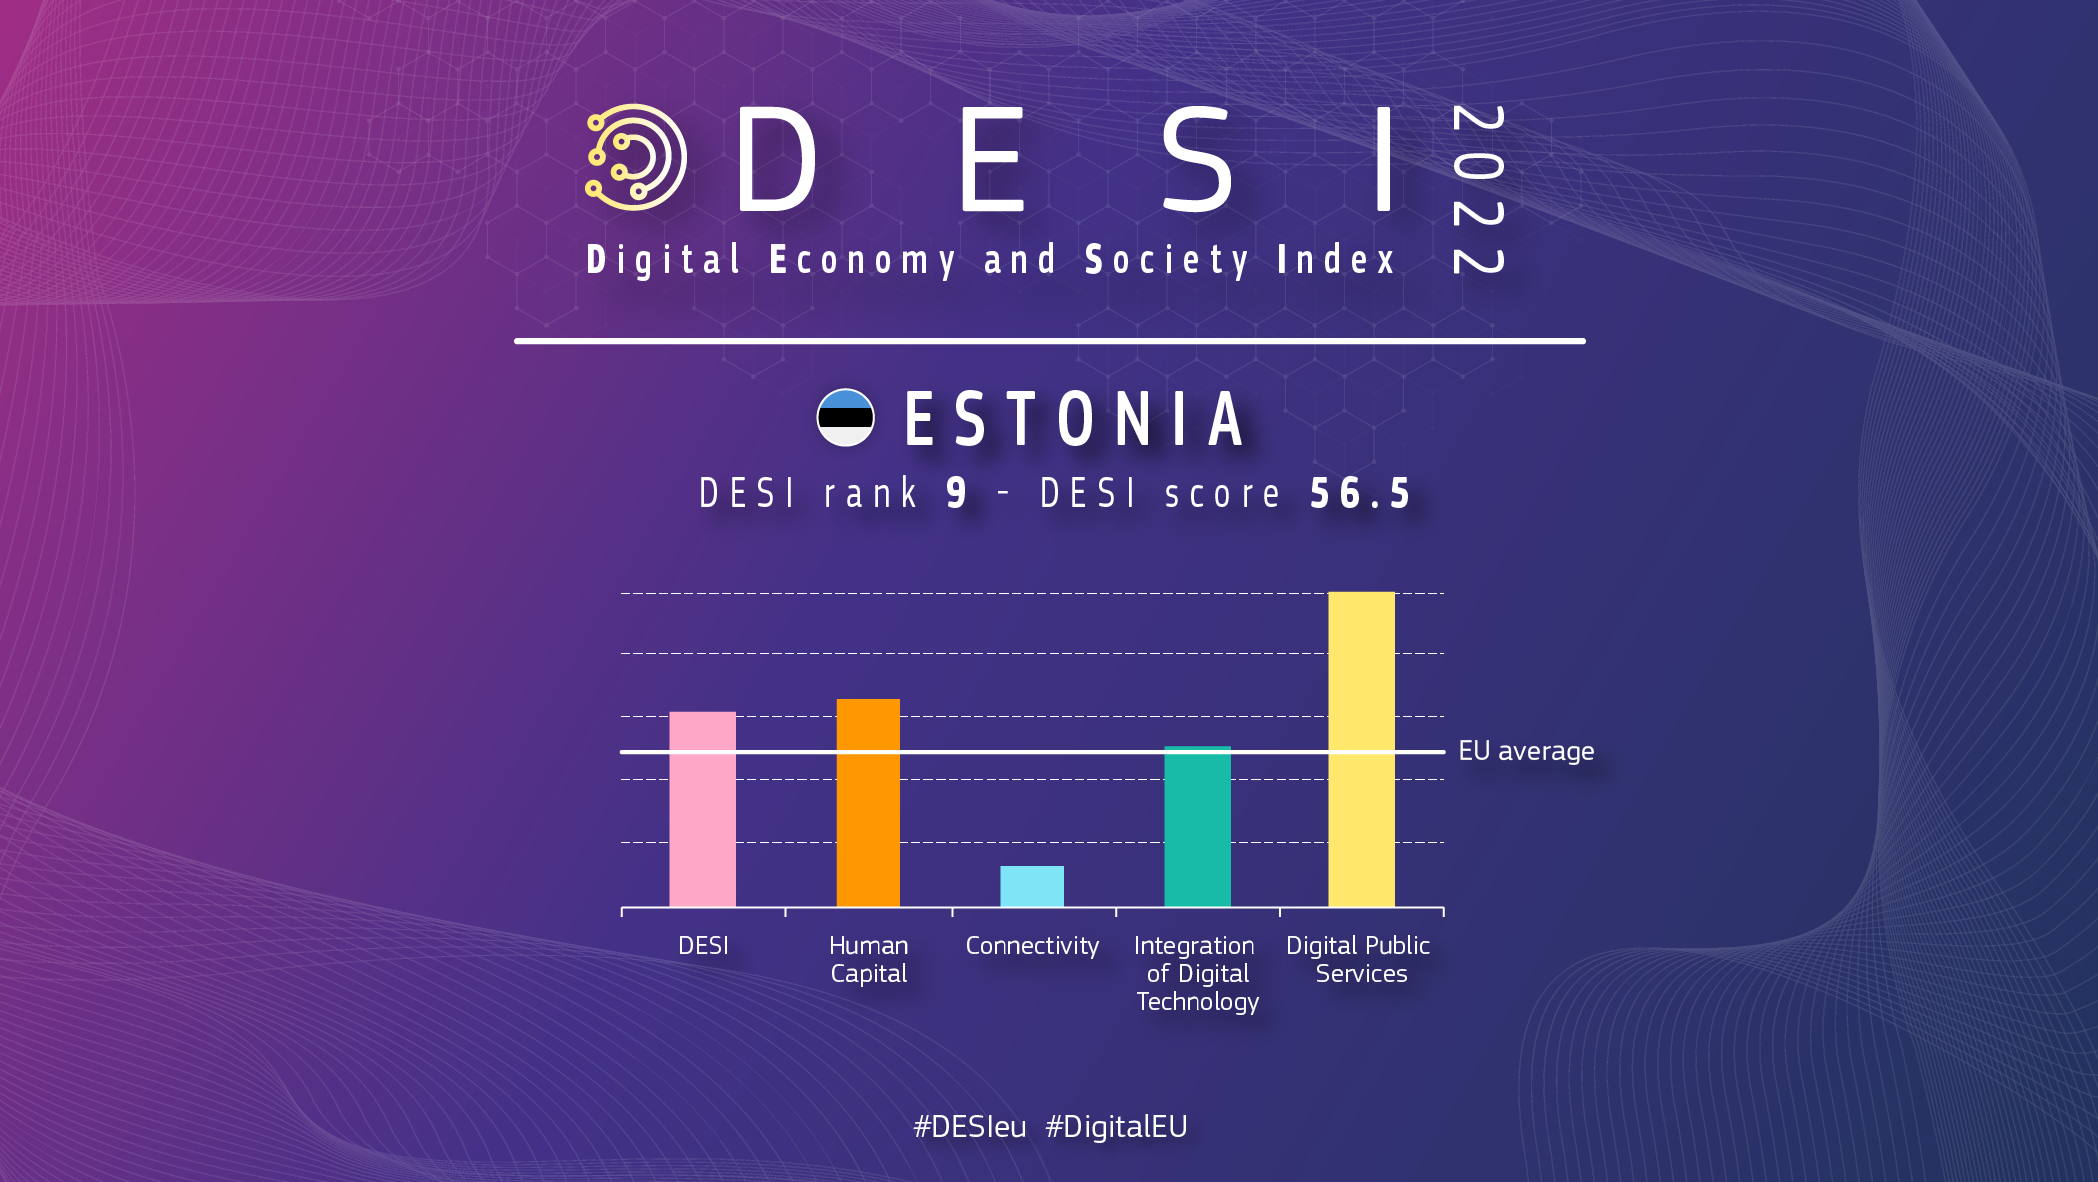 Aperçu graphique de l’Estonie à DESI montrant un classement de 9 et un score de 56,5